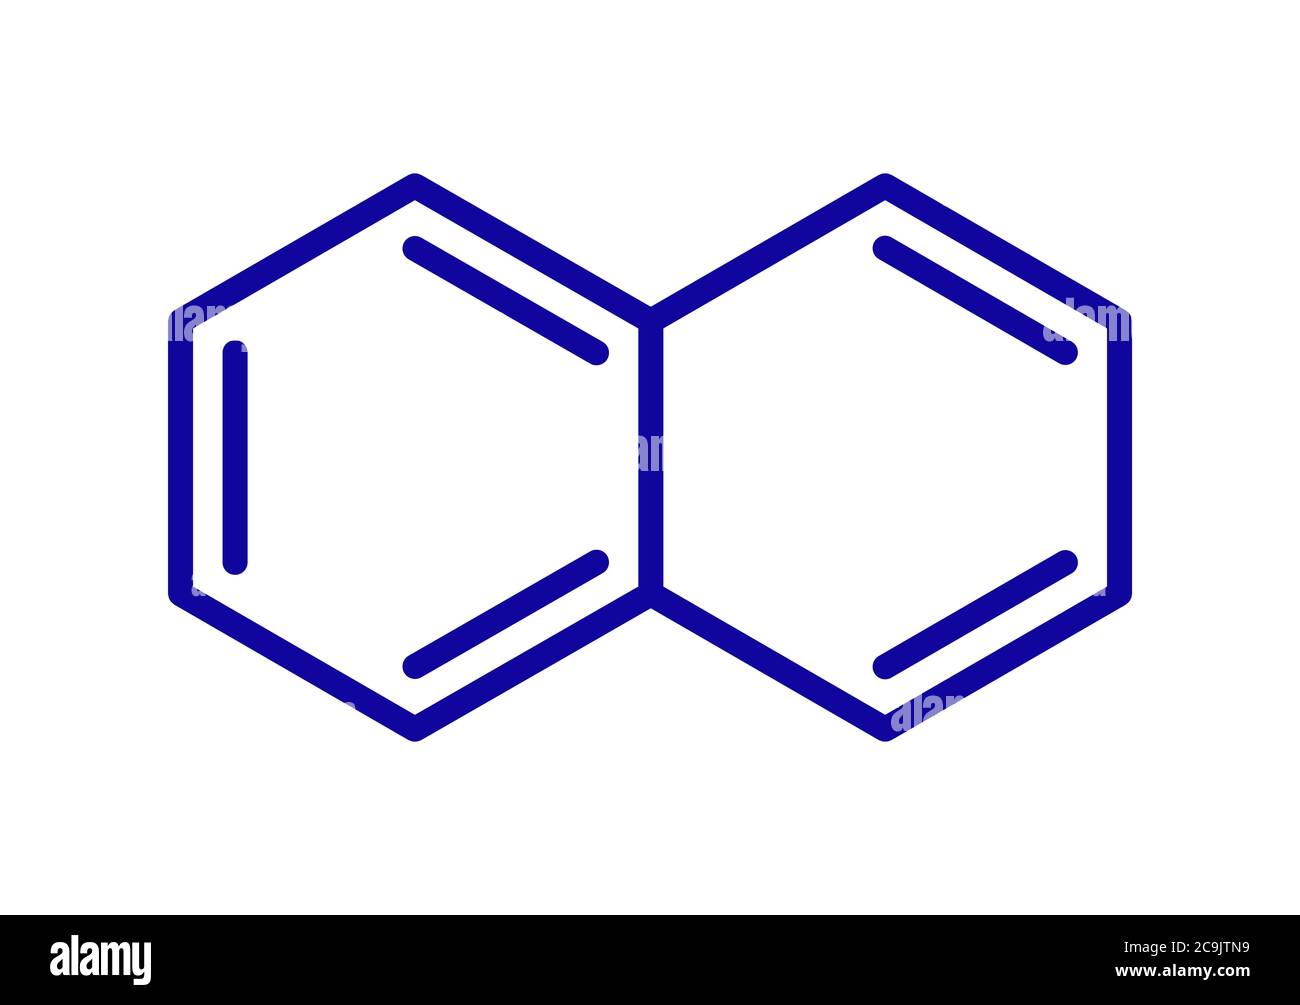 Naphthalin aromatisches Kohlenwasserstoffmolekül. Wird als Mothball-Zutat verwendet. Blaue Skelettformel auf weißem Hintergrund. Stockfoto